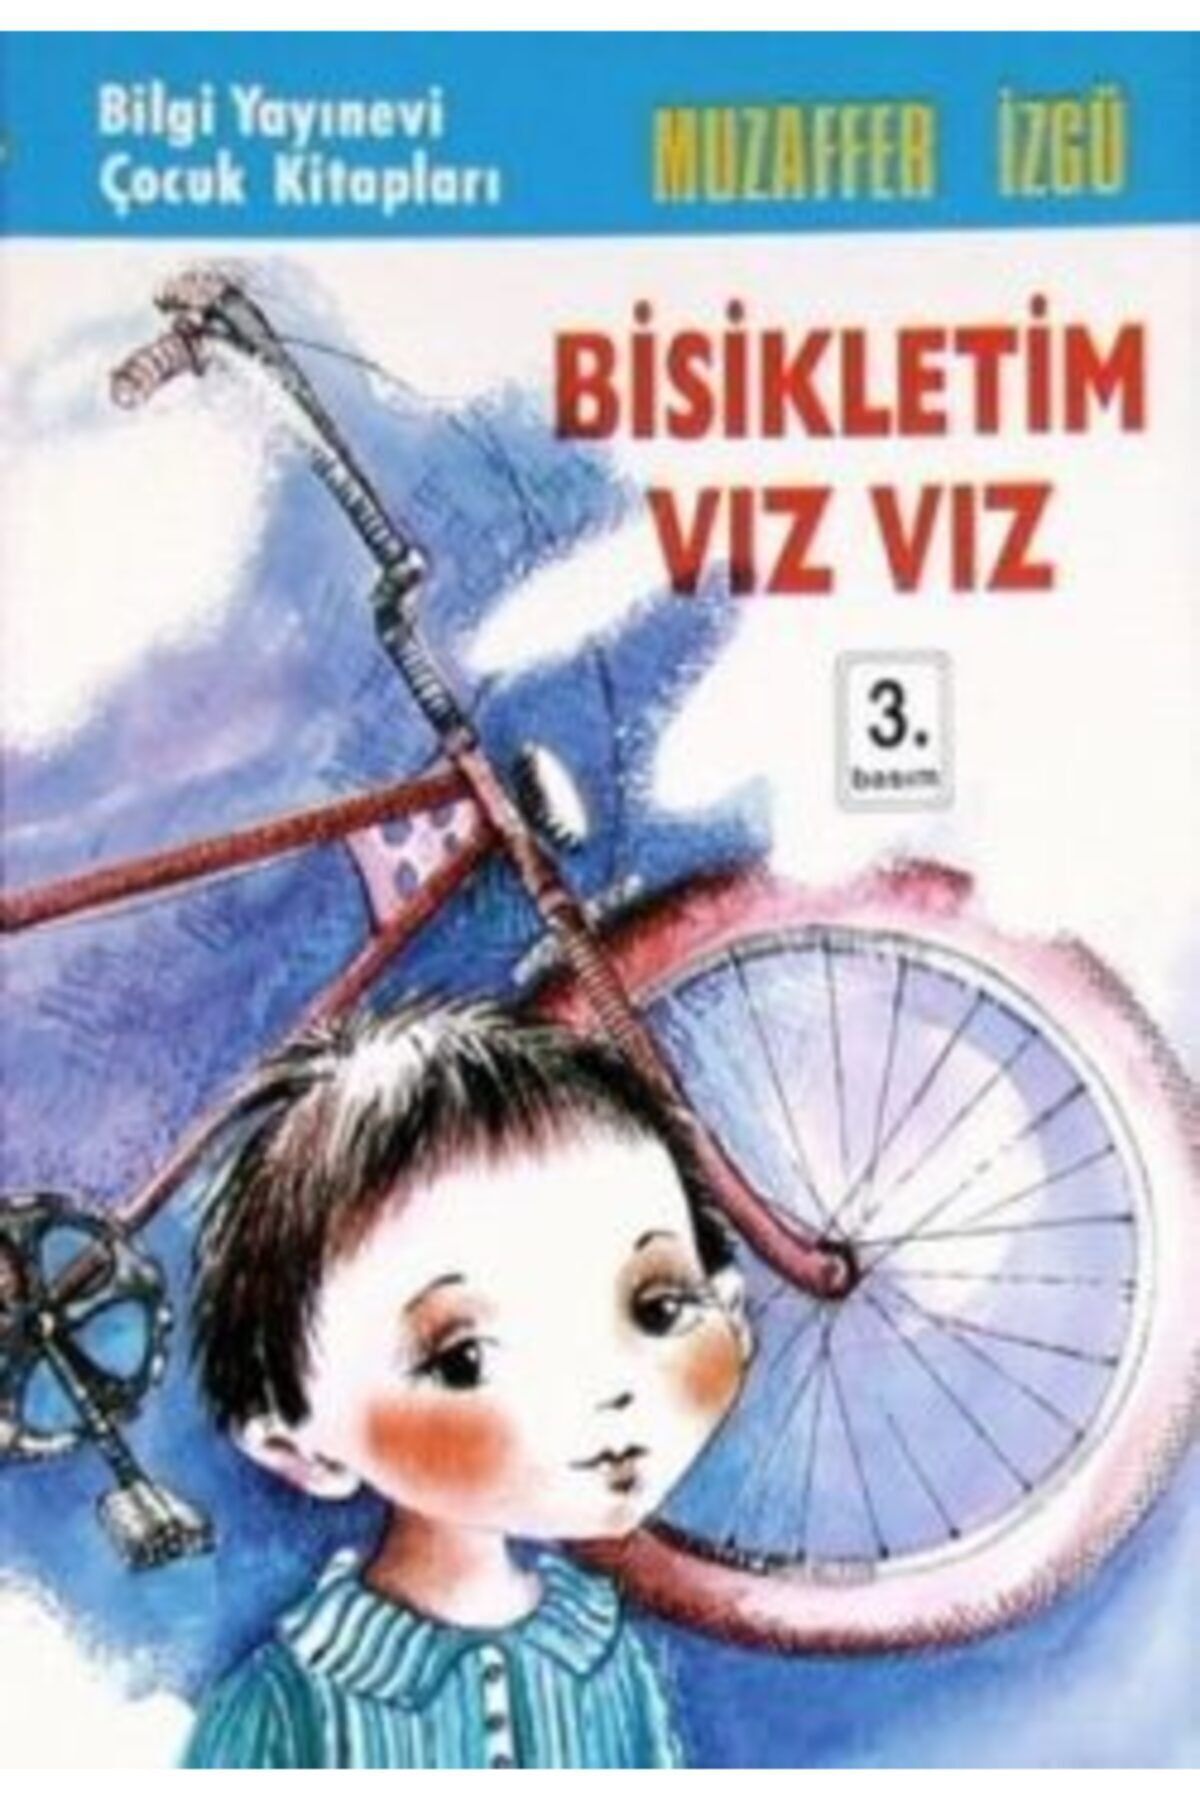 Bilgi Yayınları Bisikletim Vız Vız - Bilgi Yayınevi Çocuk - Muzaffer Izgü